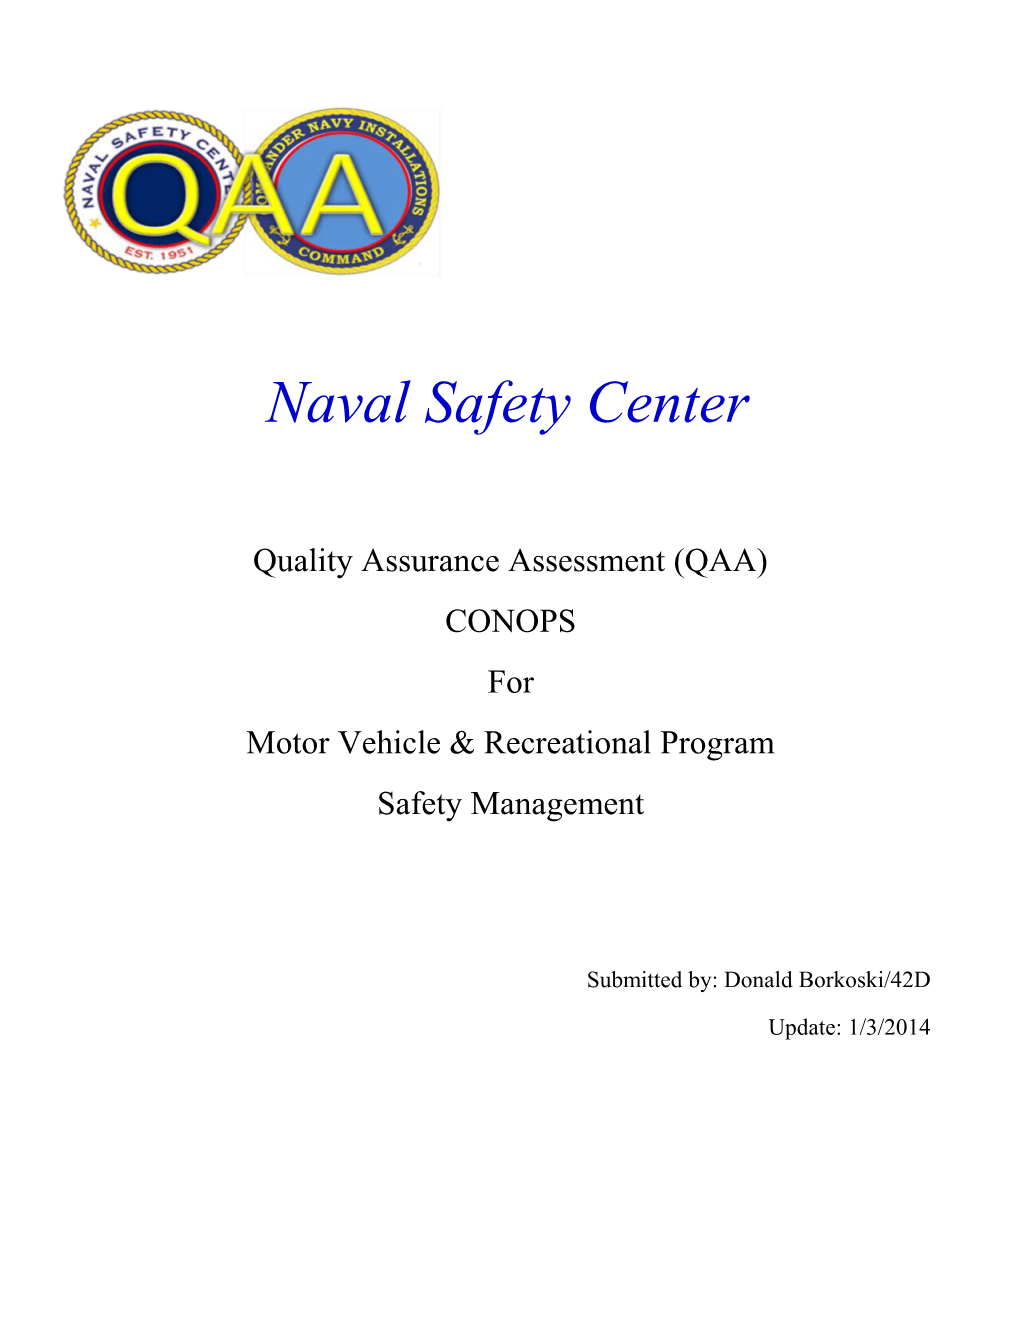 MV-REC QAA CONOPS CNSC Code 42